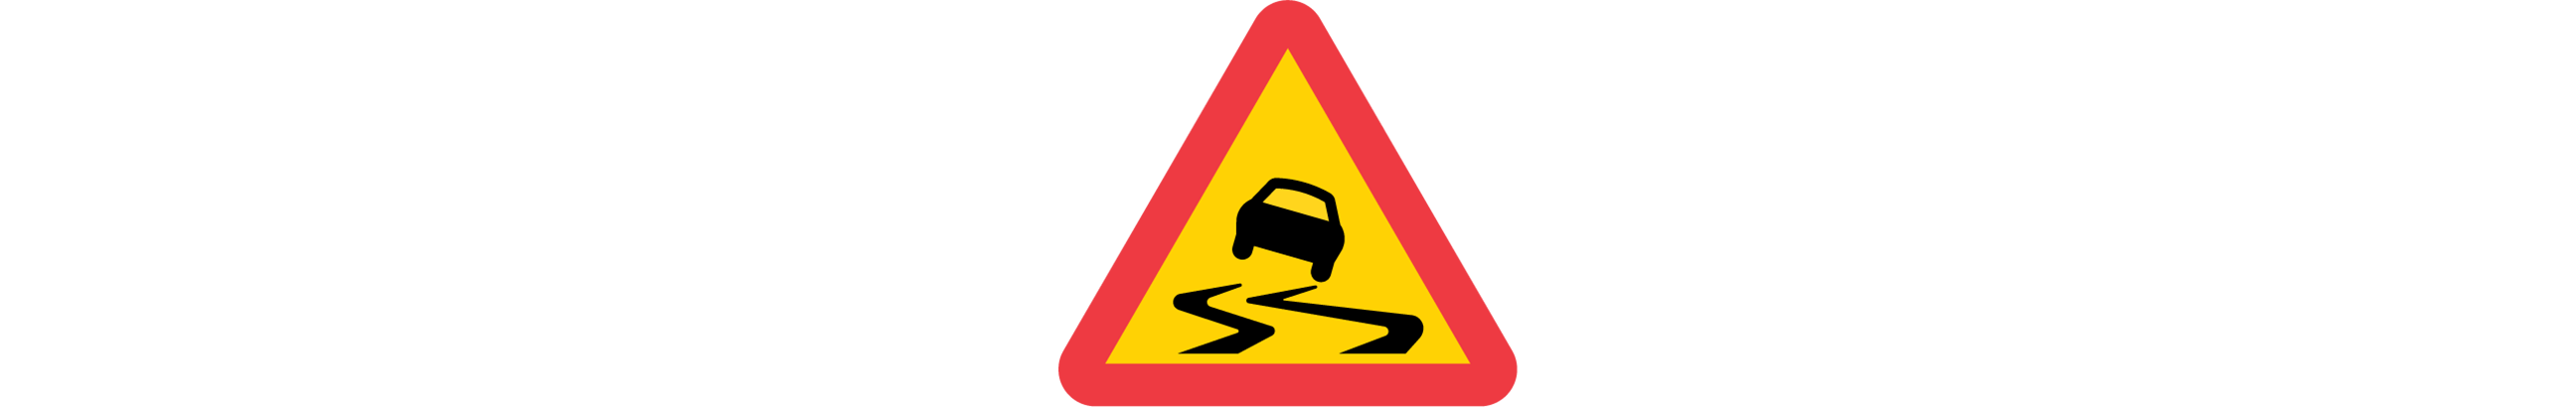 varning för slirig väg